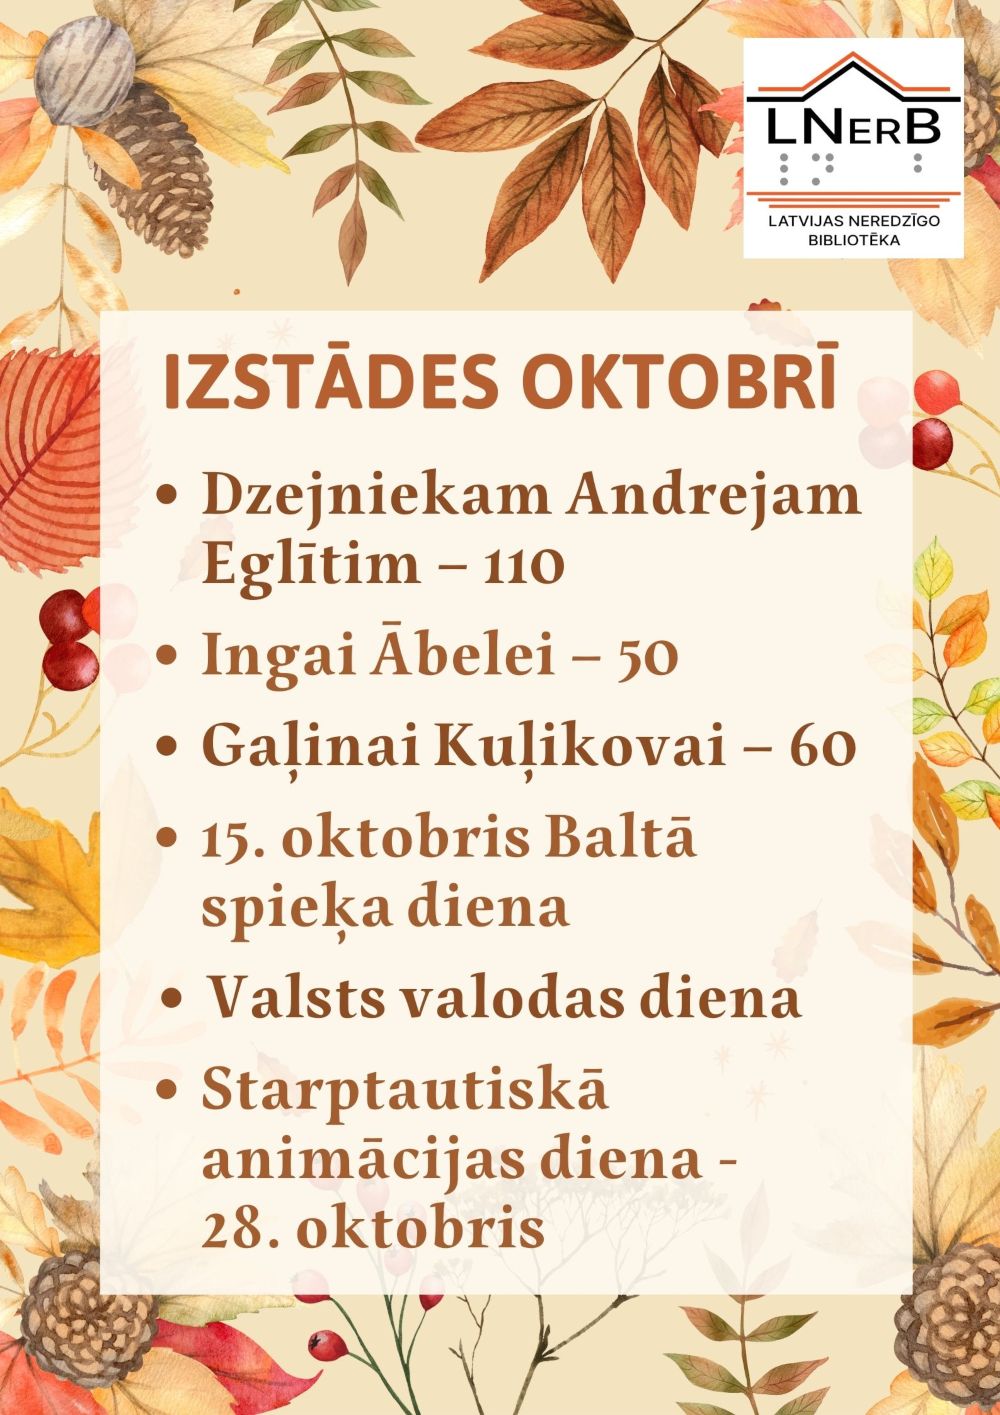 Plakāts "Izstādes oktobrī bibliotēkā Rīgā"